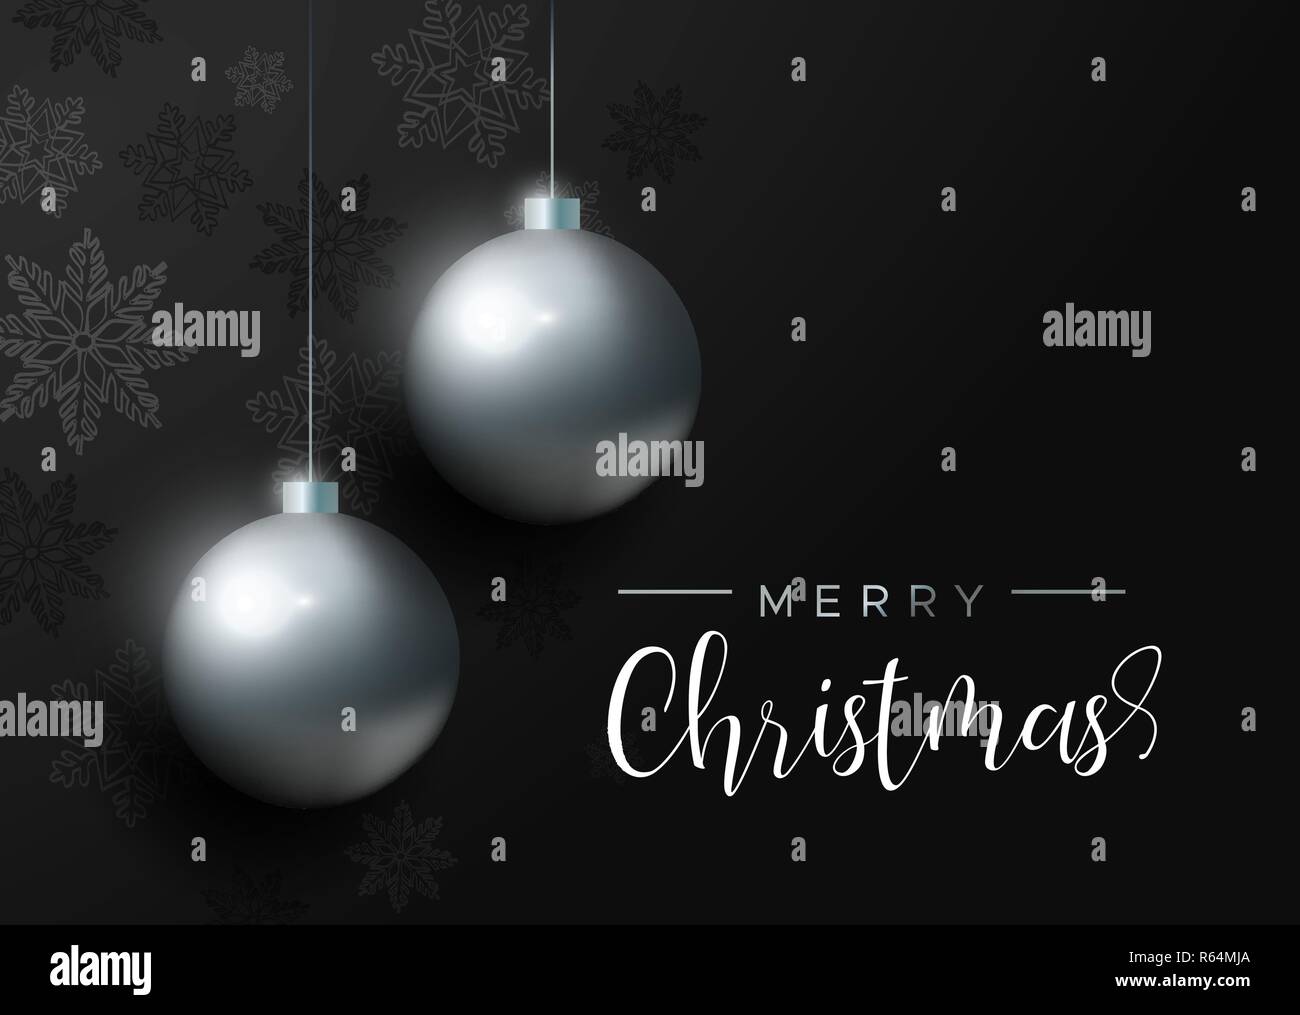 Weihnachtskarte mit schwarzen Xmas bauble Ornamente und Schneeflocke Dekoration. Luxus Urlaub Kugeln Hintergrund für die Einladung oder Jahreszeiten Gruß. Stock Vektor